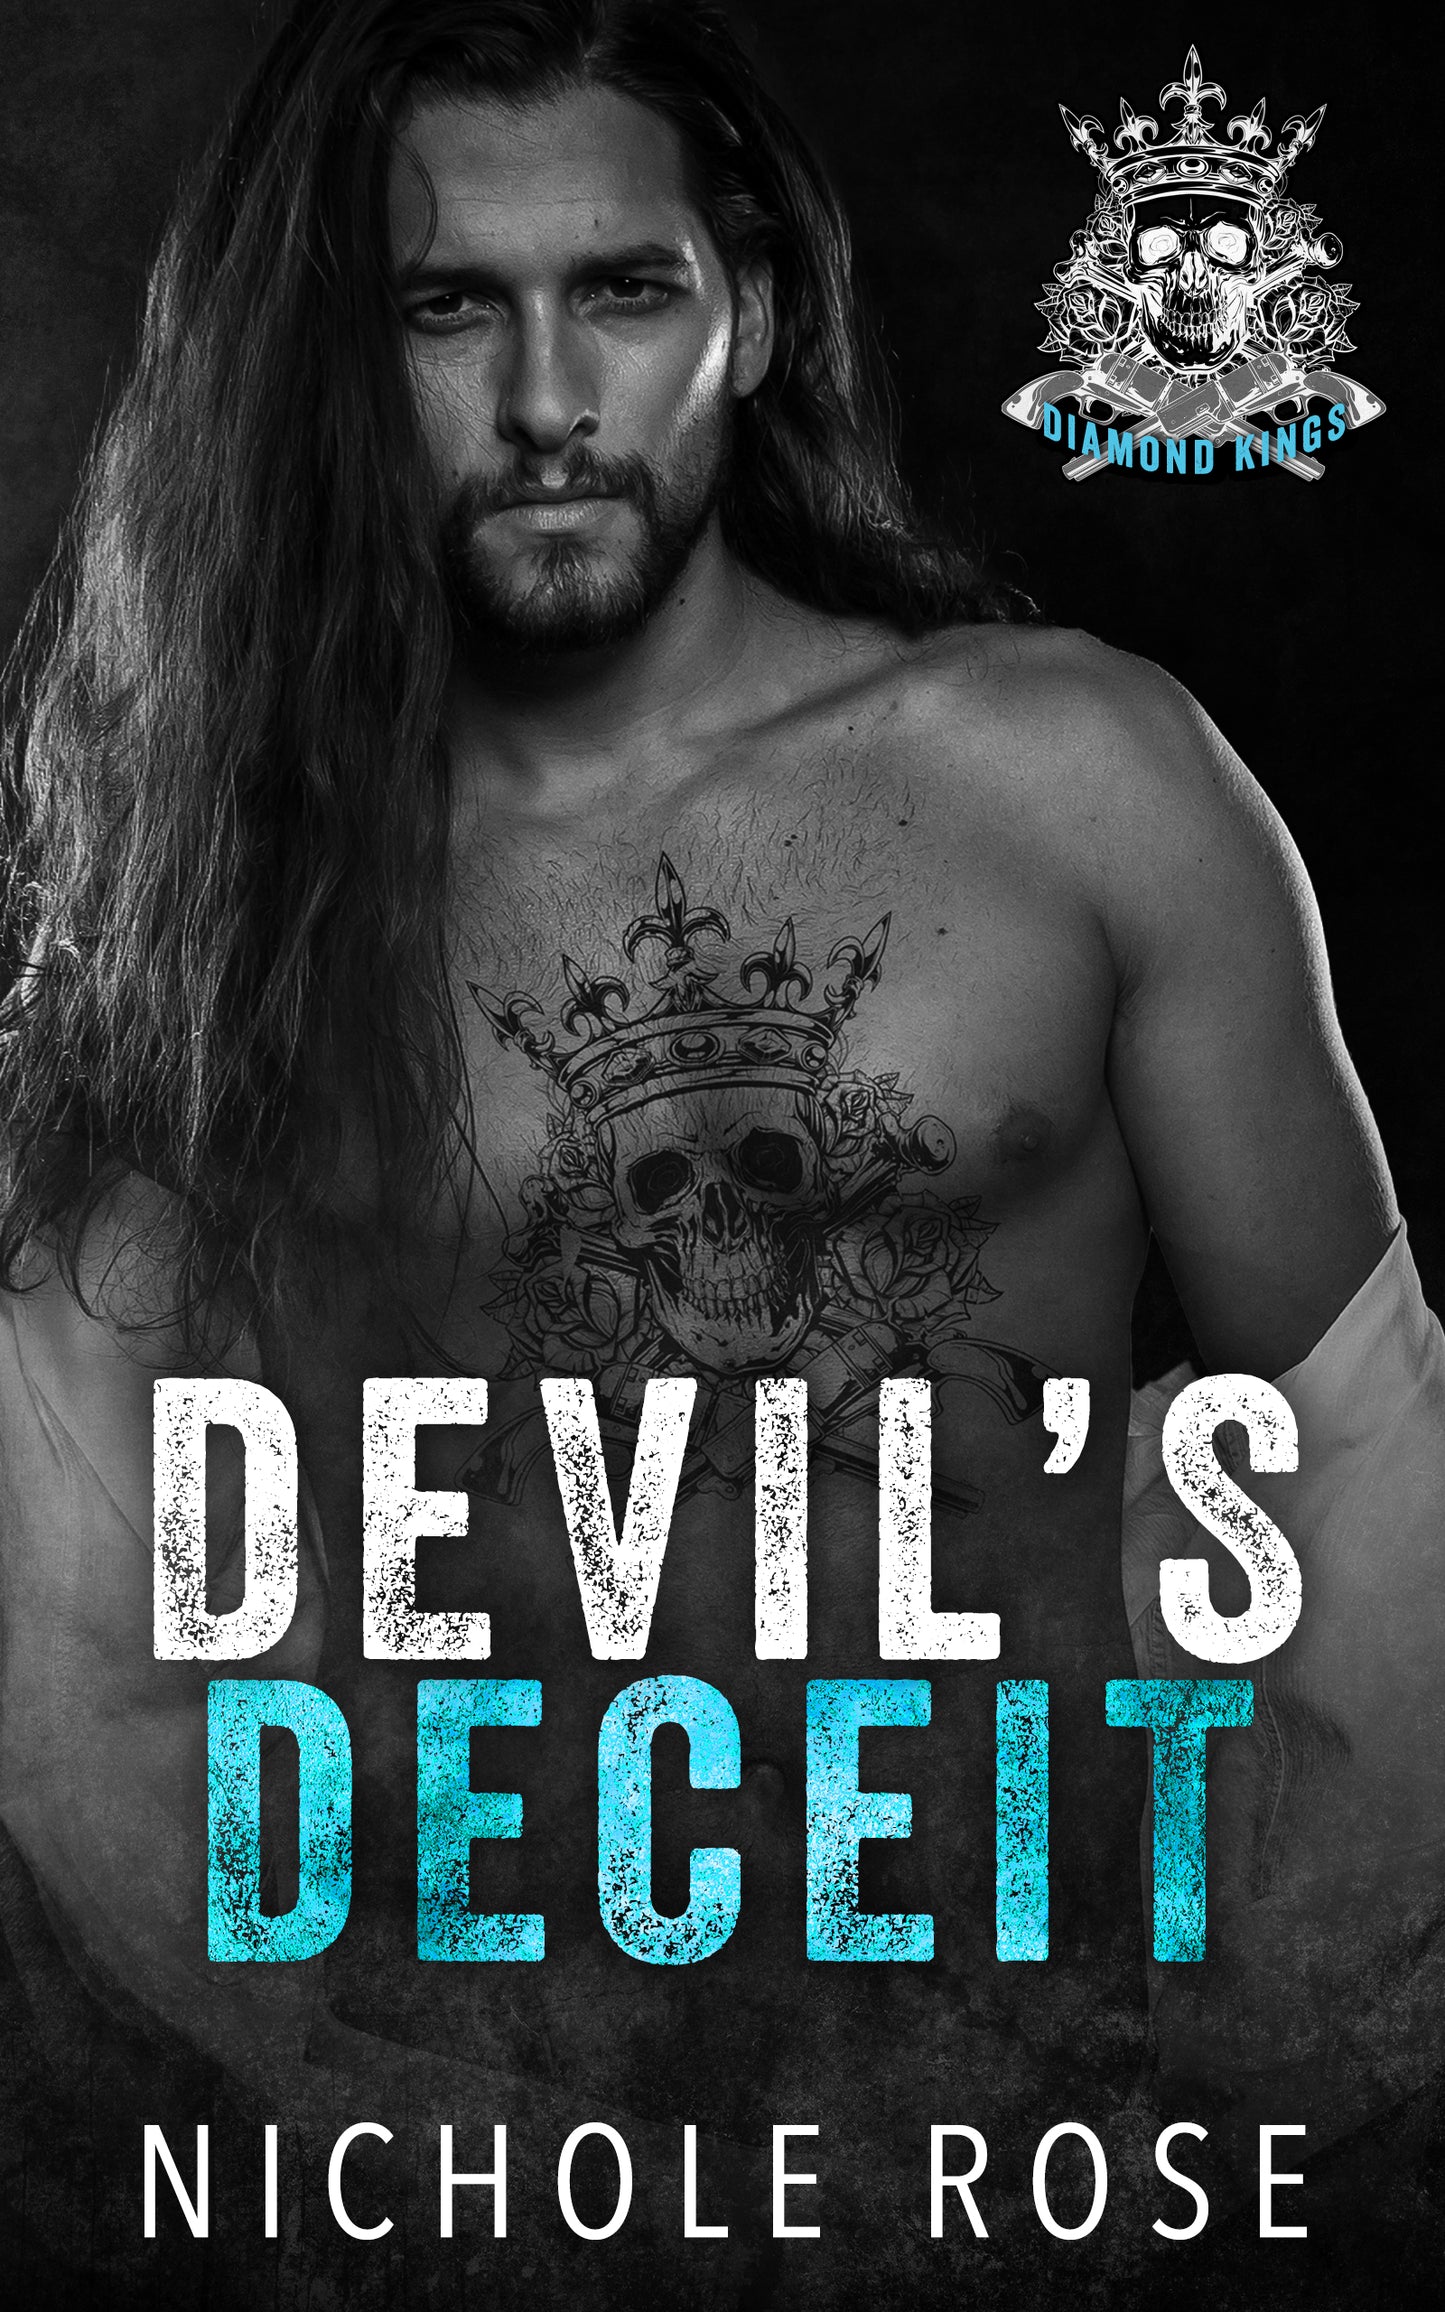 Devil's Deceit